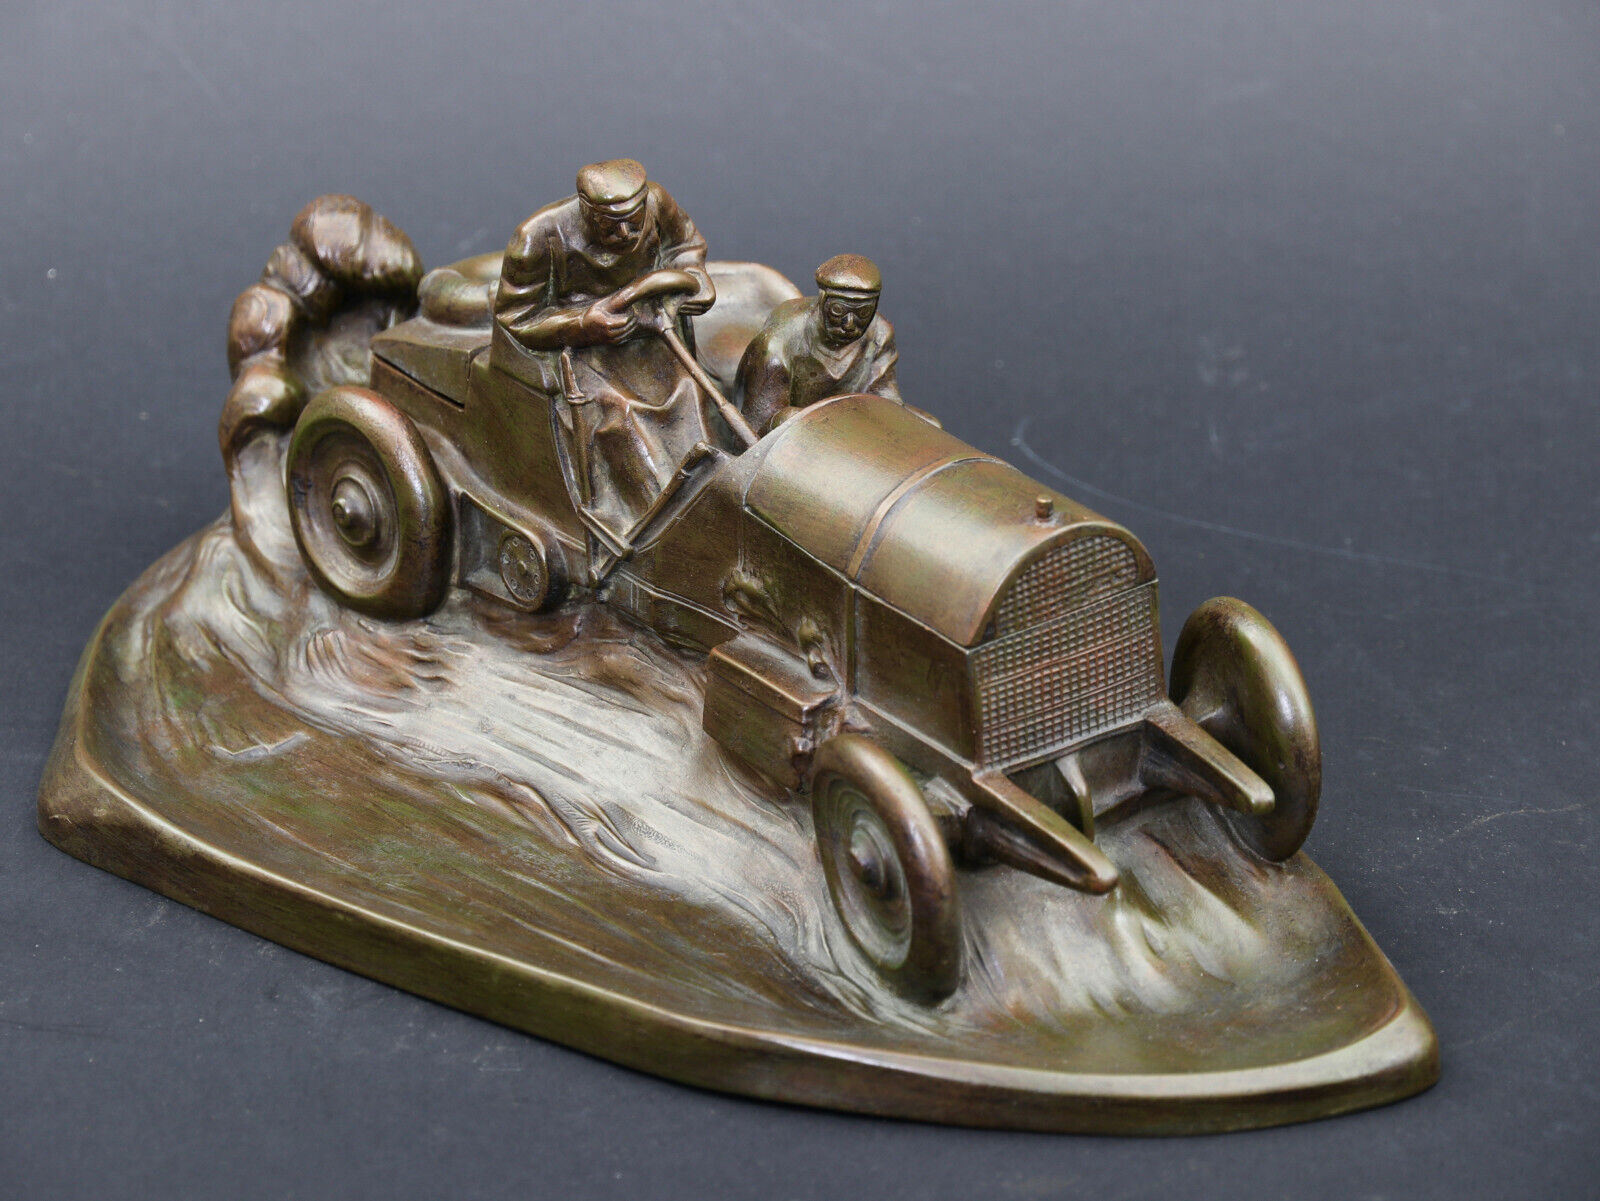 GORDON BENETT 1904 RACE CAR ACCESSORY FOR DESK BY WMF BELLE EPOQUE 